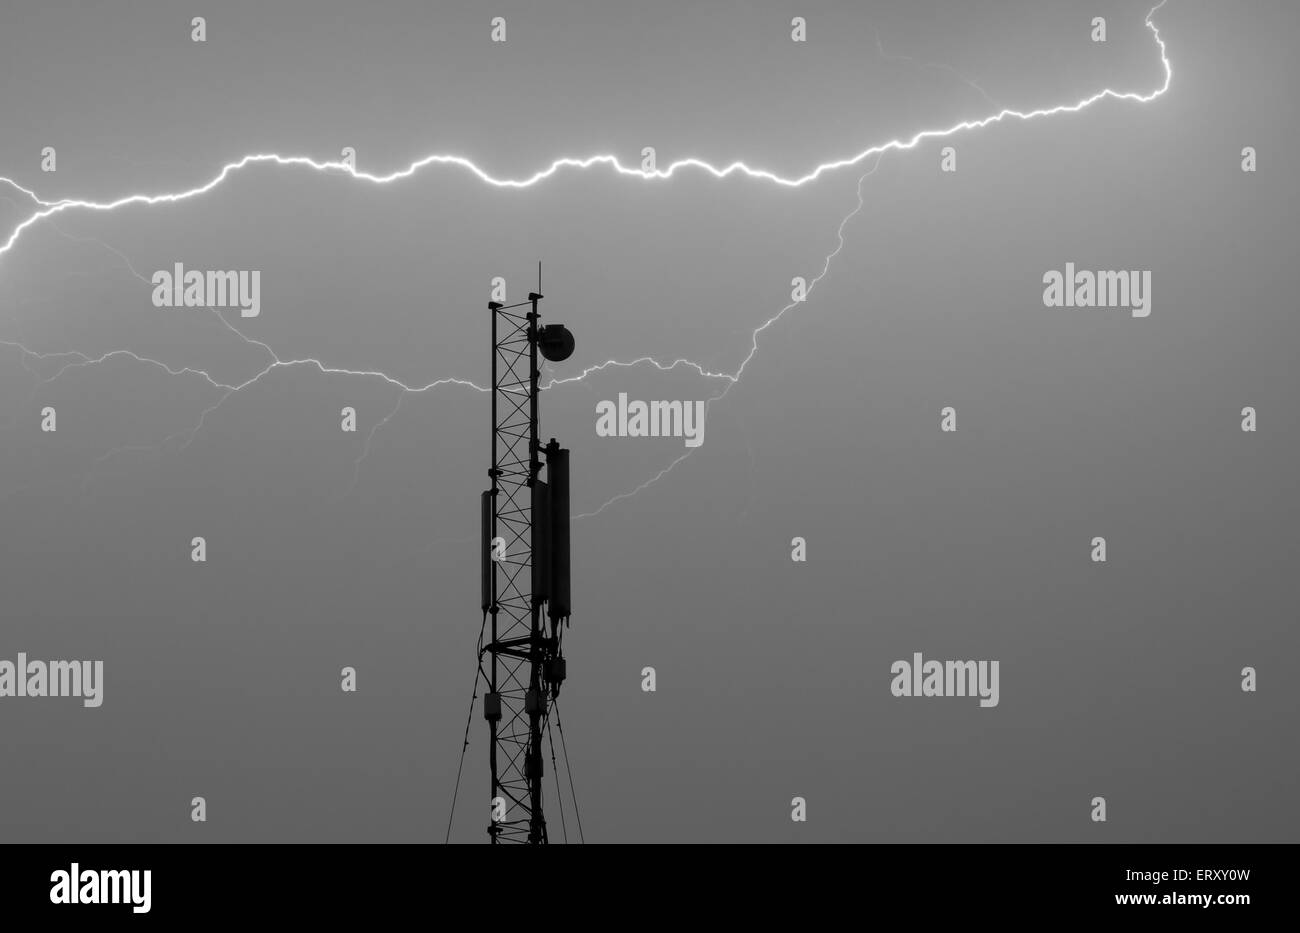 L'antenne pour une connexion cellulaire dans le cadre d'une attaque éclair (Thunderbolt) - photo nocturne. Banque D'Images